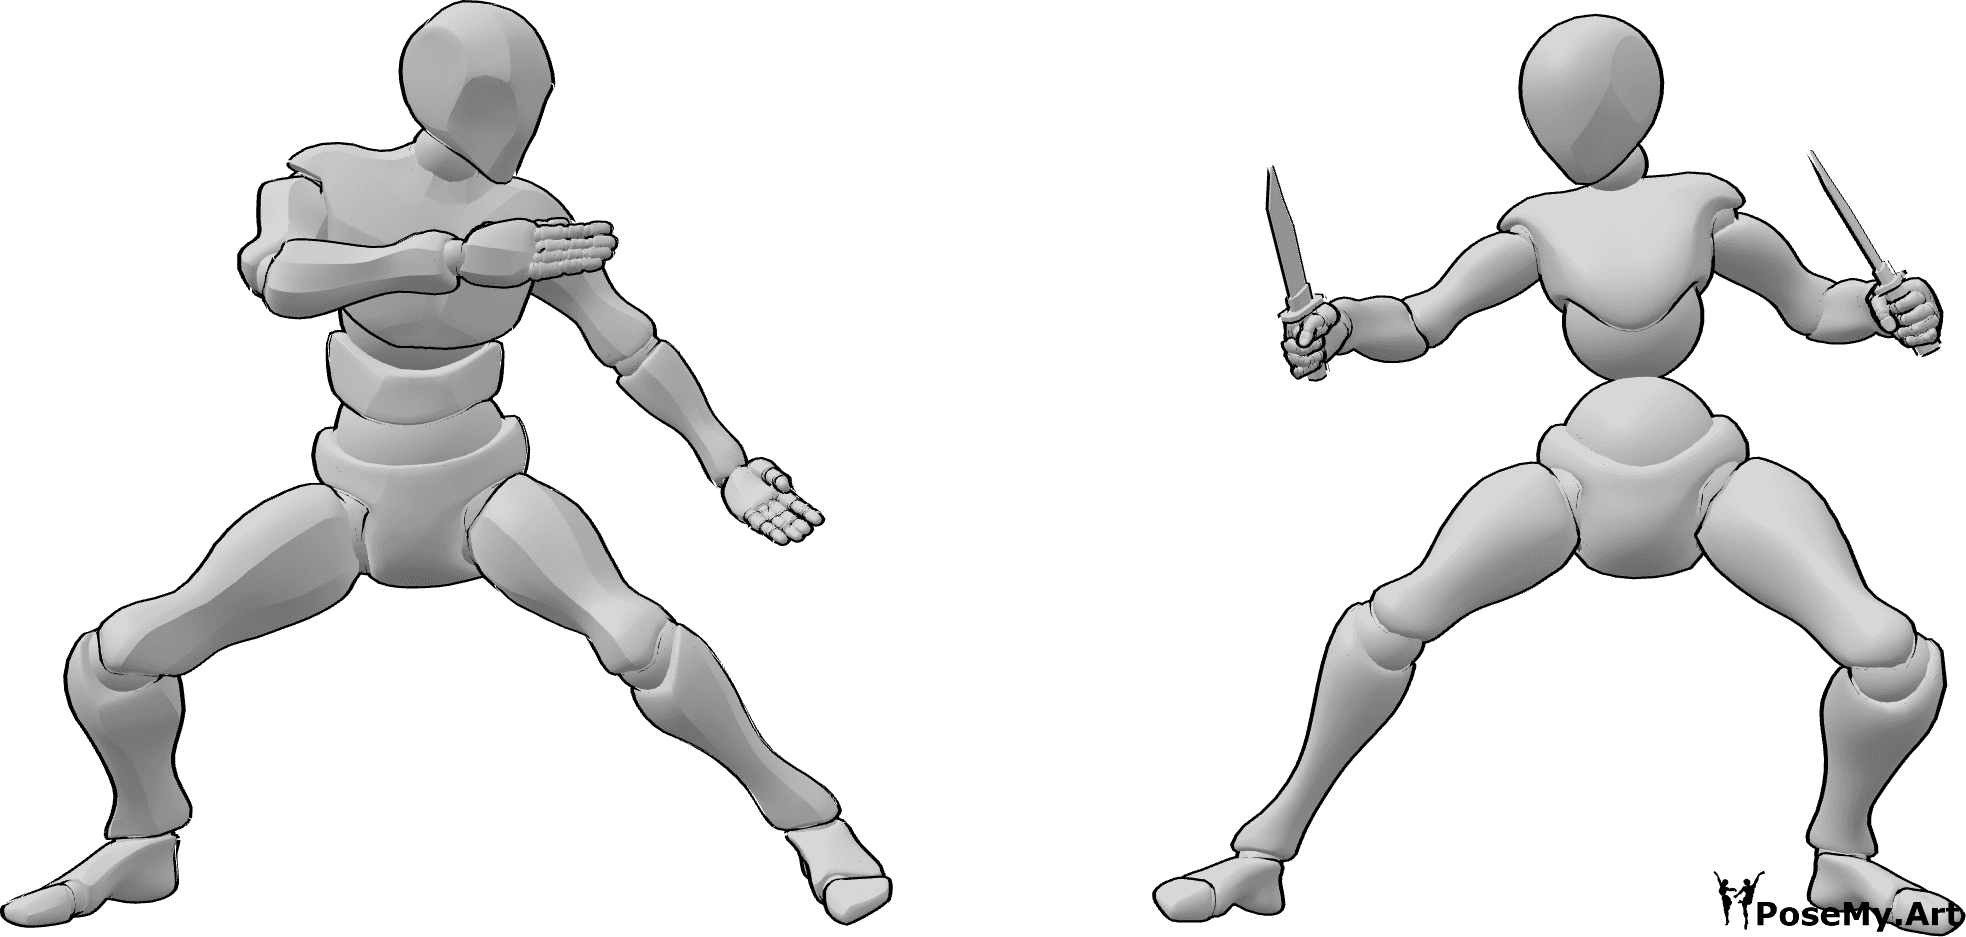 Referência de poses- Pose de combate com facas - A mulher e o homem estão prestes a começar a lutar, a mulher tem facas na mão